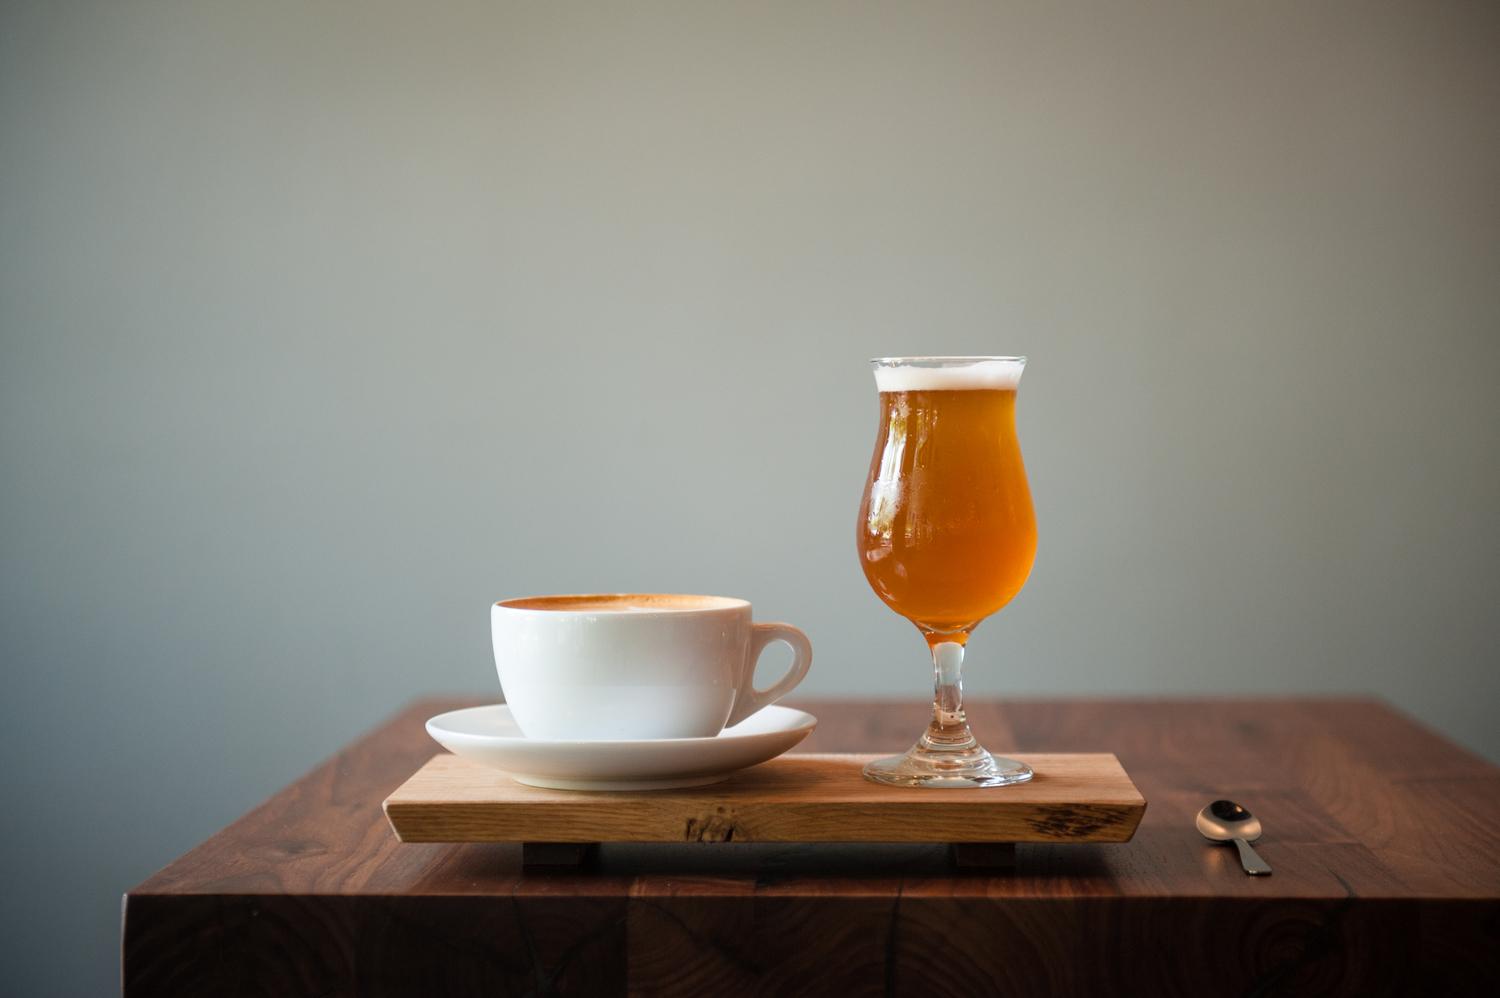 Mi a közös a sörben és kávéban? Megtudhatod cikkünkből!